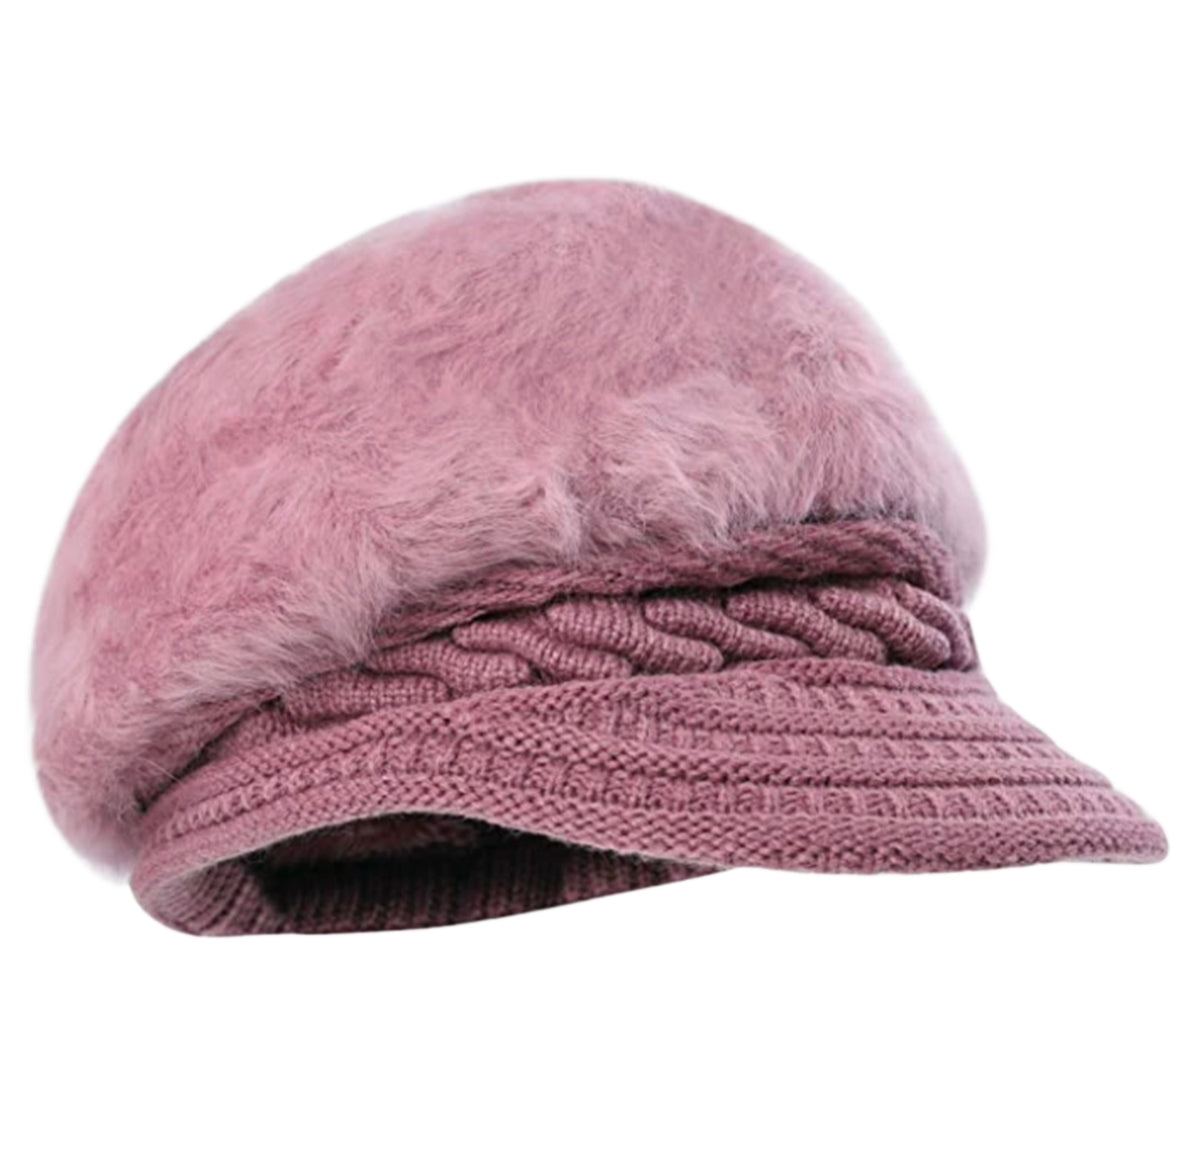 Cute Winter Fur Cap